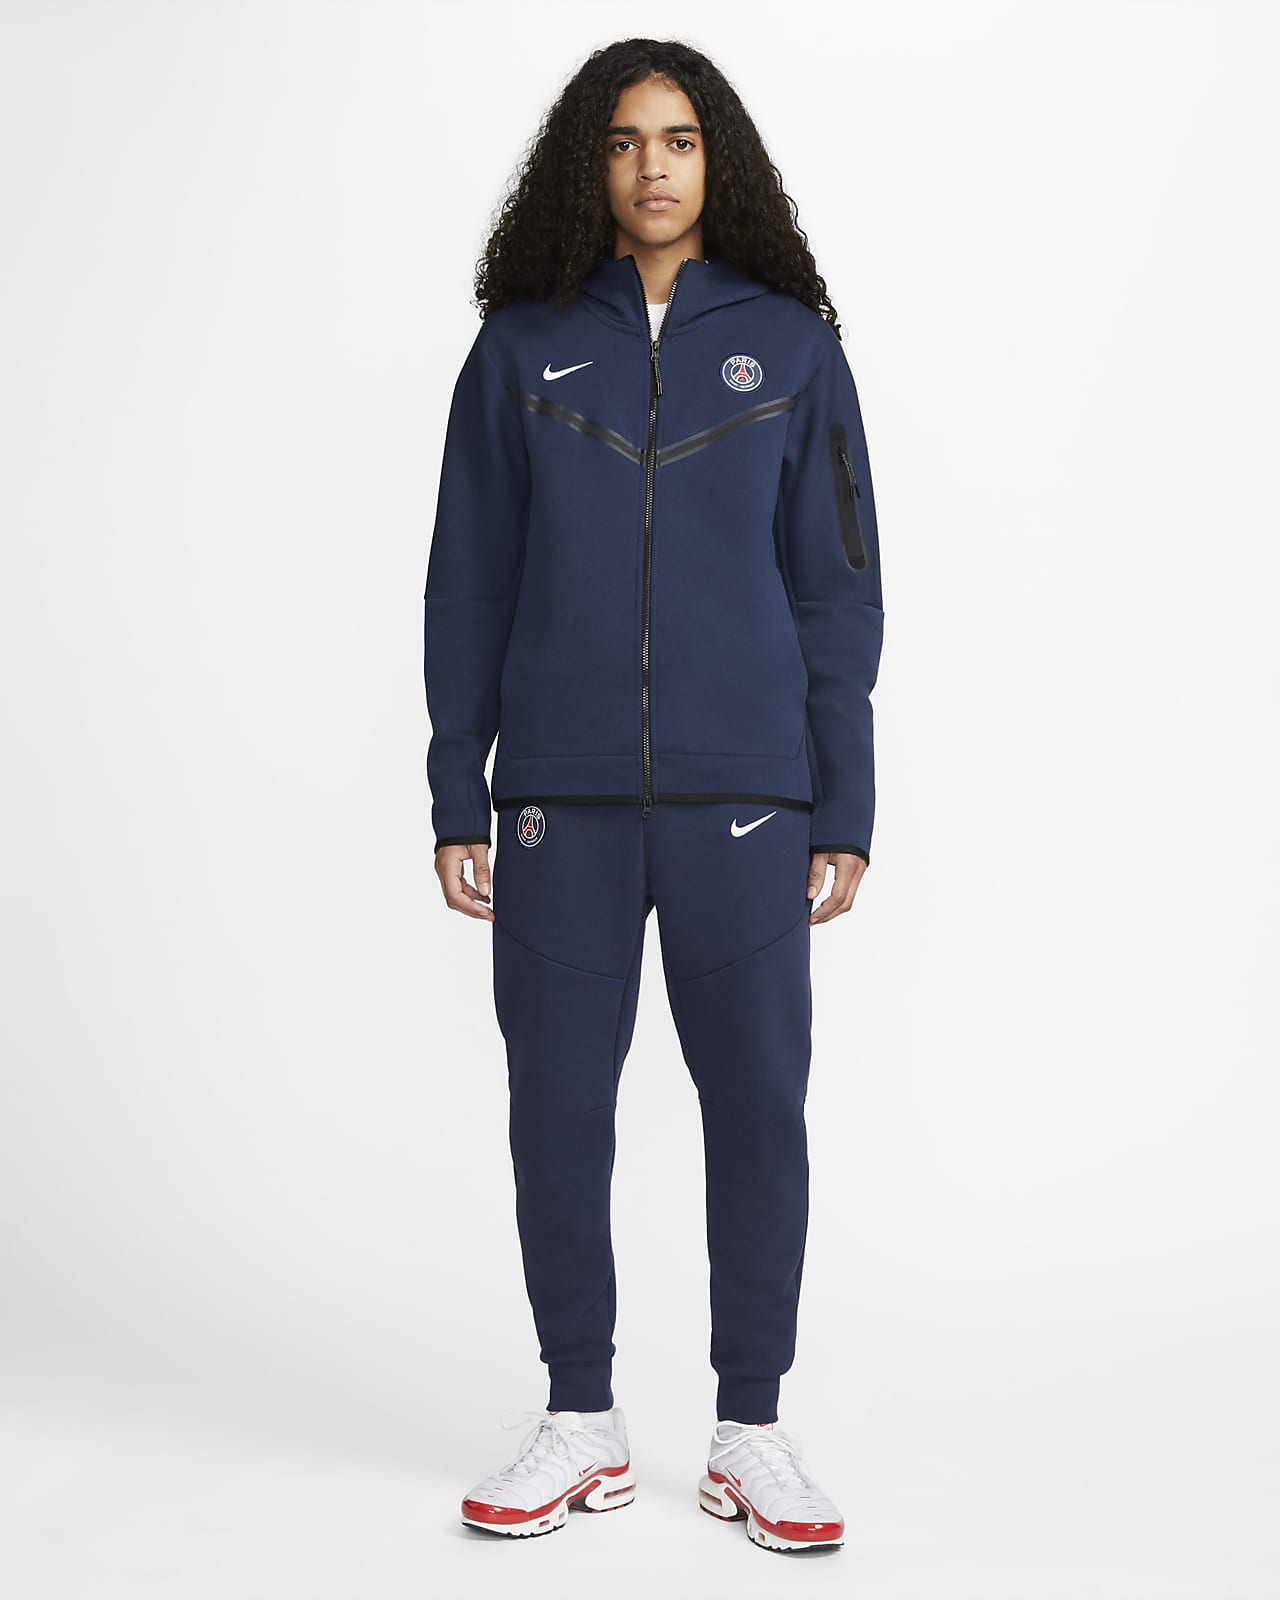 Saint-Germain Tech Fleece Windrunner con con completa - Hombre. Nike ES